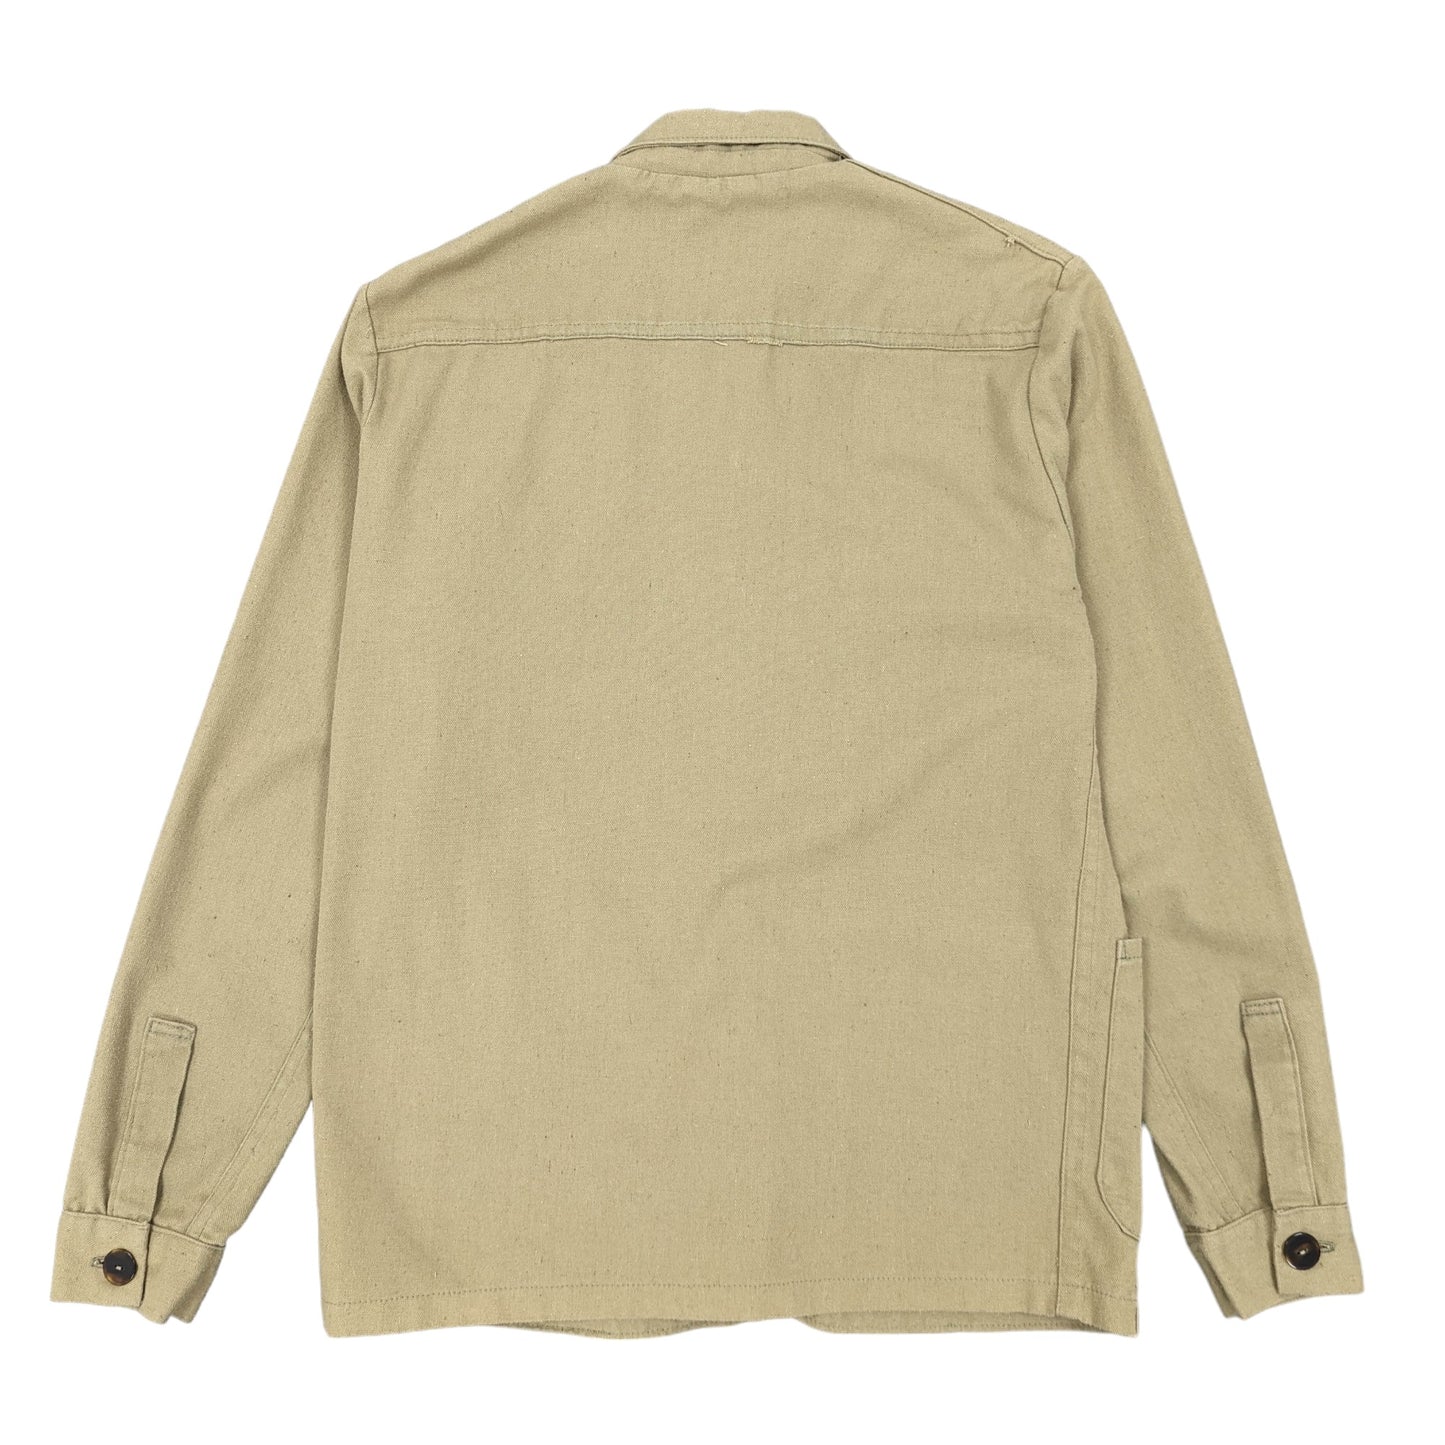 Vintage Worker Jacket Size L